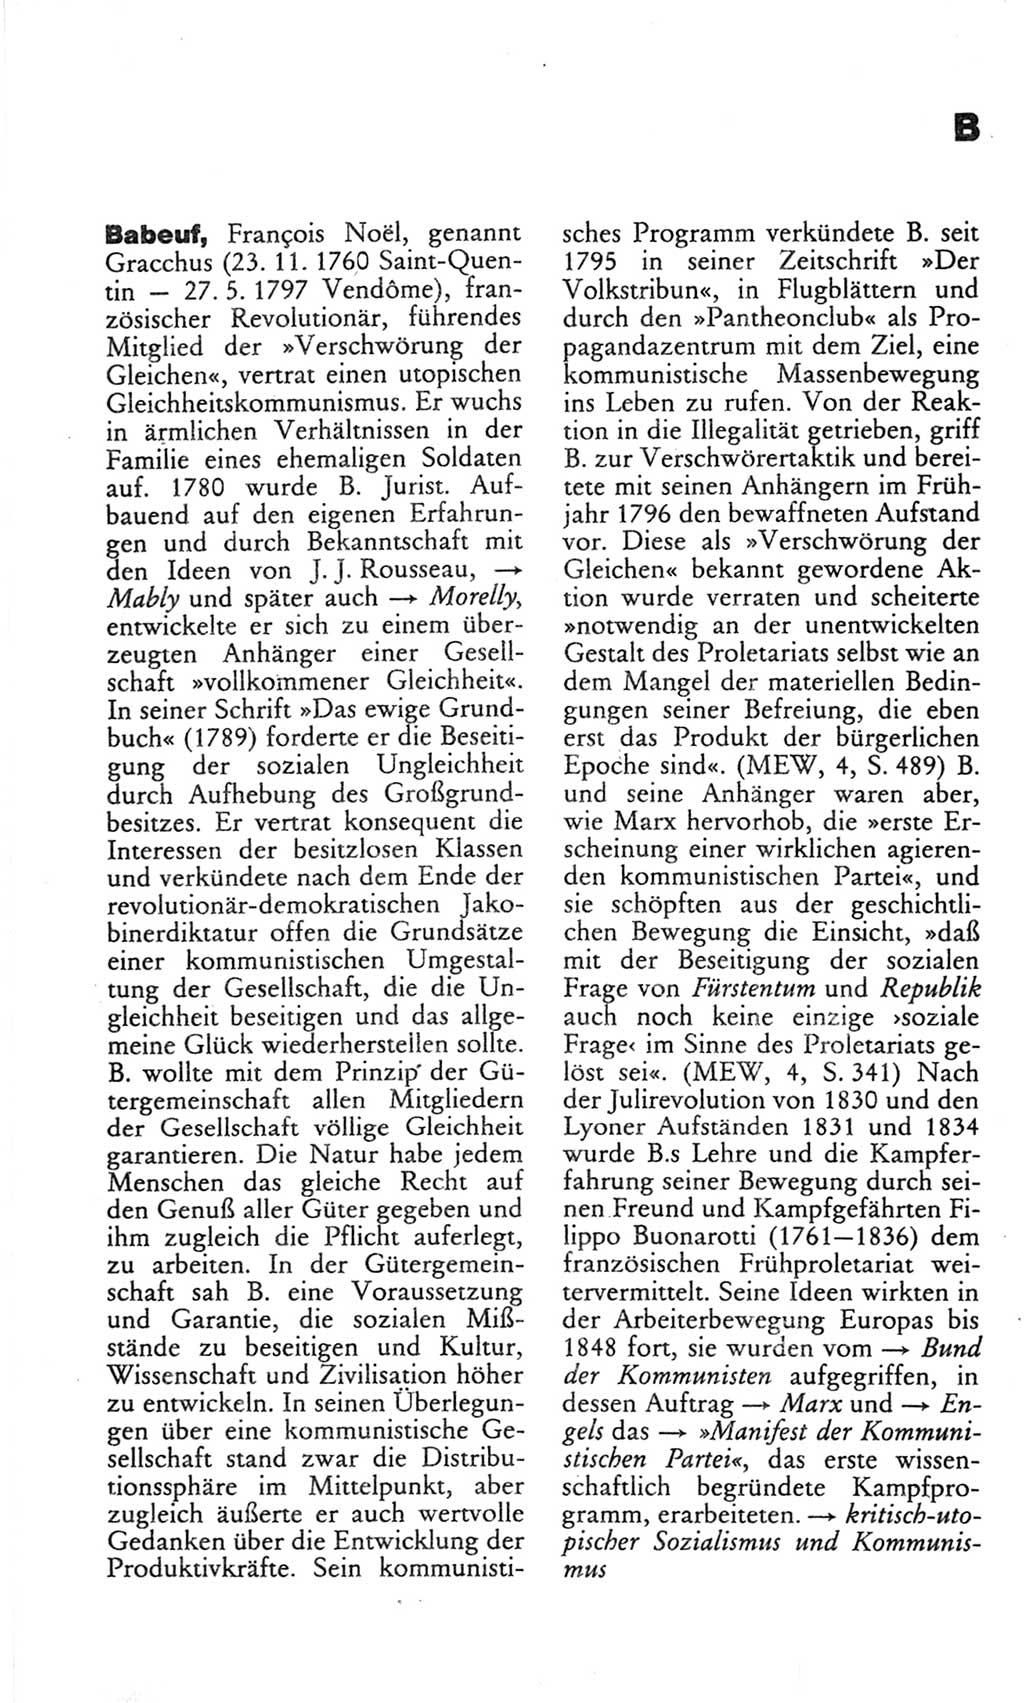 Wörterbuch des wissenschaftlichen Kommunismus [Deutsche Demokratische Republik (DDR)] 1982, Seite 49 (Wb. wiss. Komm. DDR 1982, S. 49)